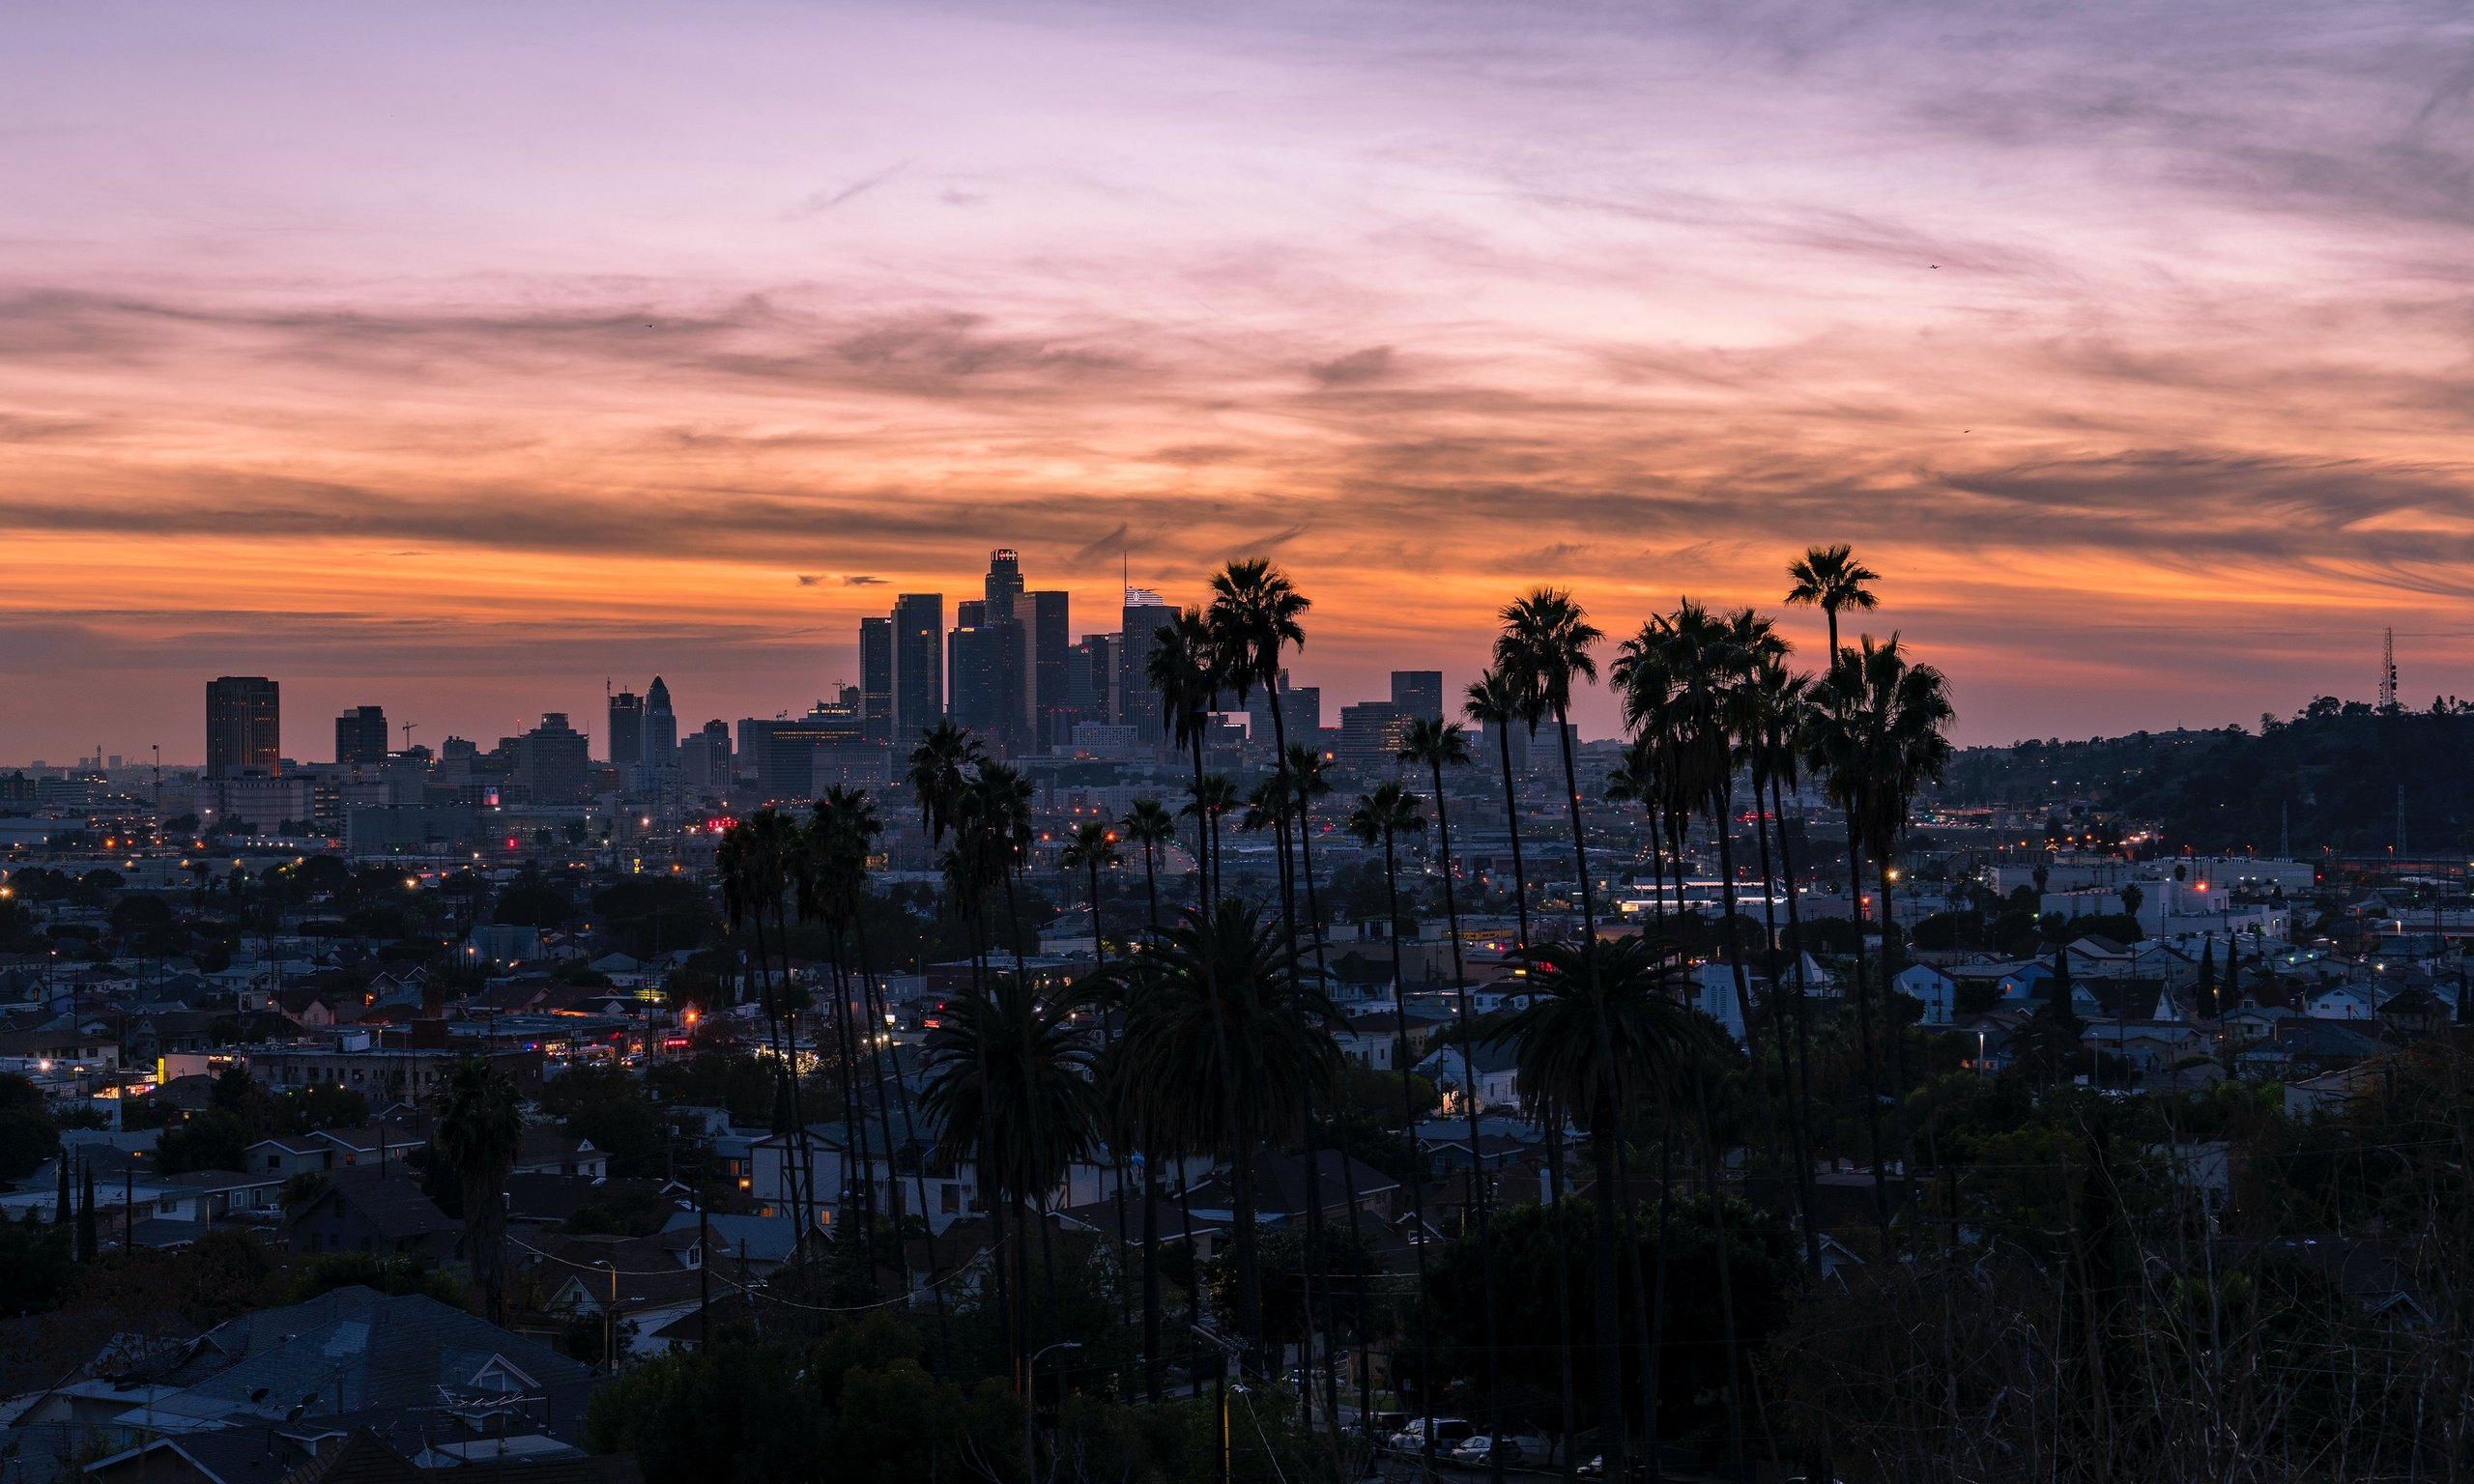 LA City Landscape Photo by Sterling Davis on Unsplash